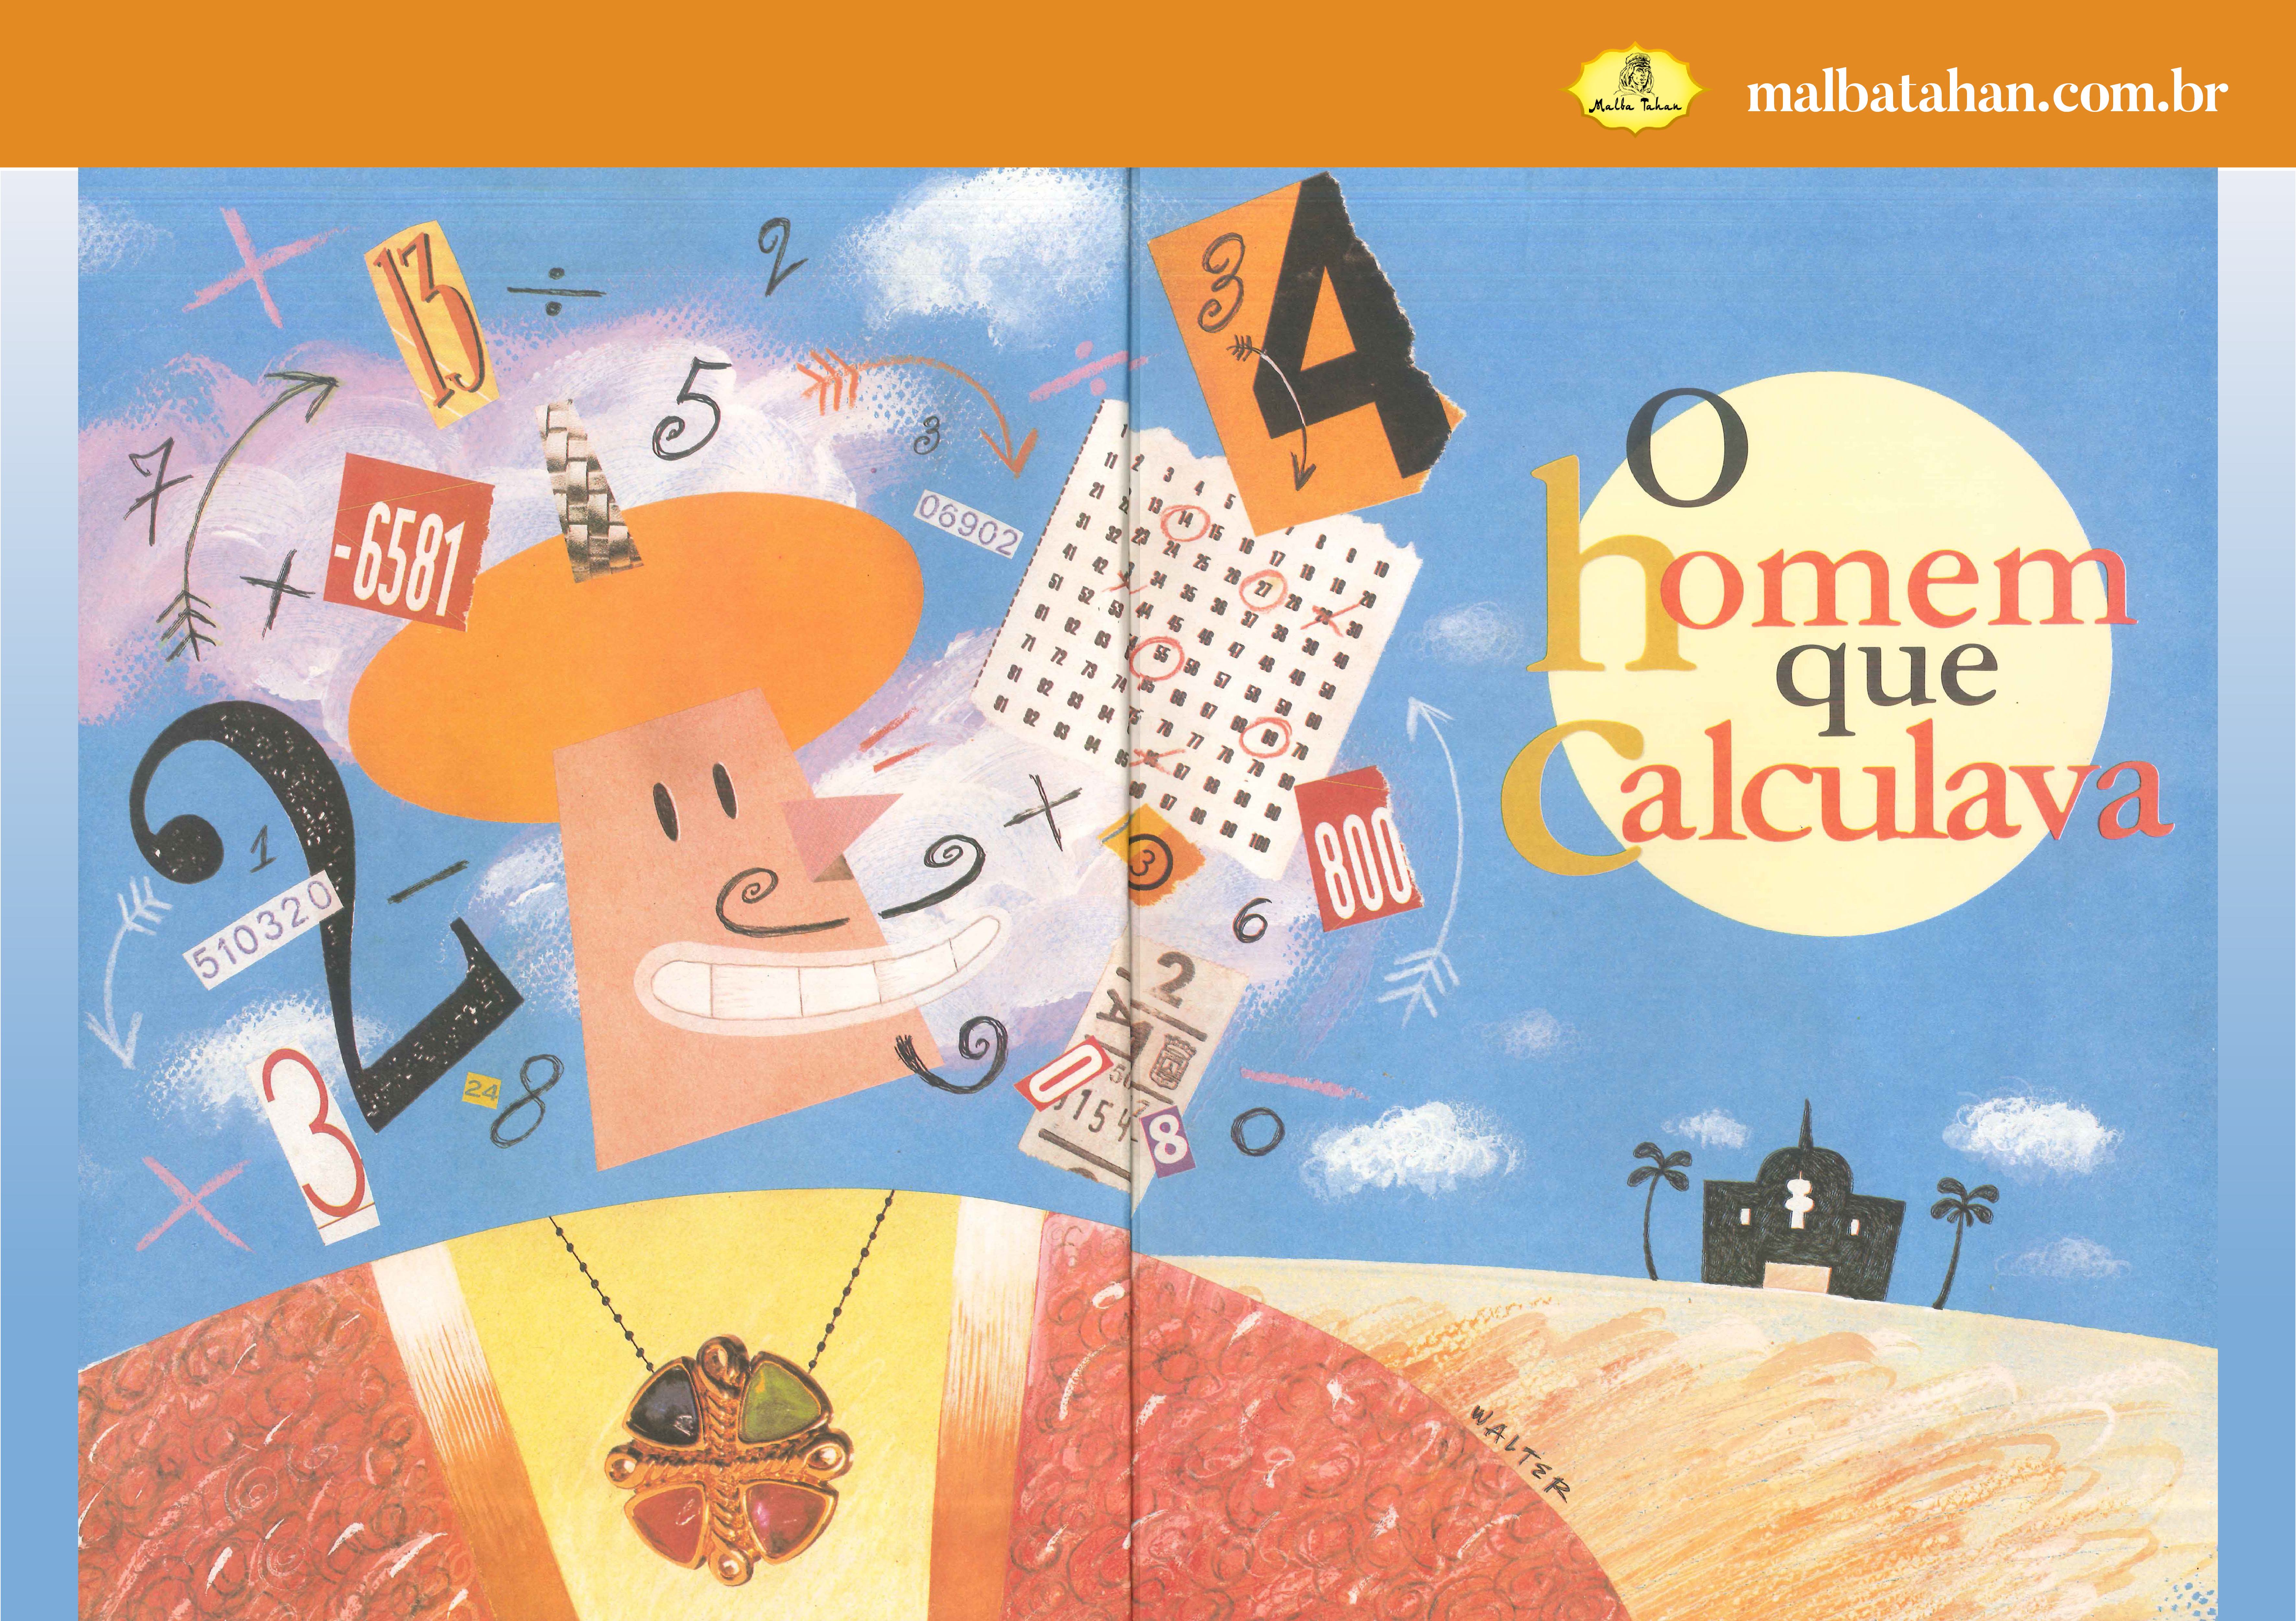 Capa de livro com uma ilustração de homem com turbante e um turbilhão de números e símbolos matemáticos.